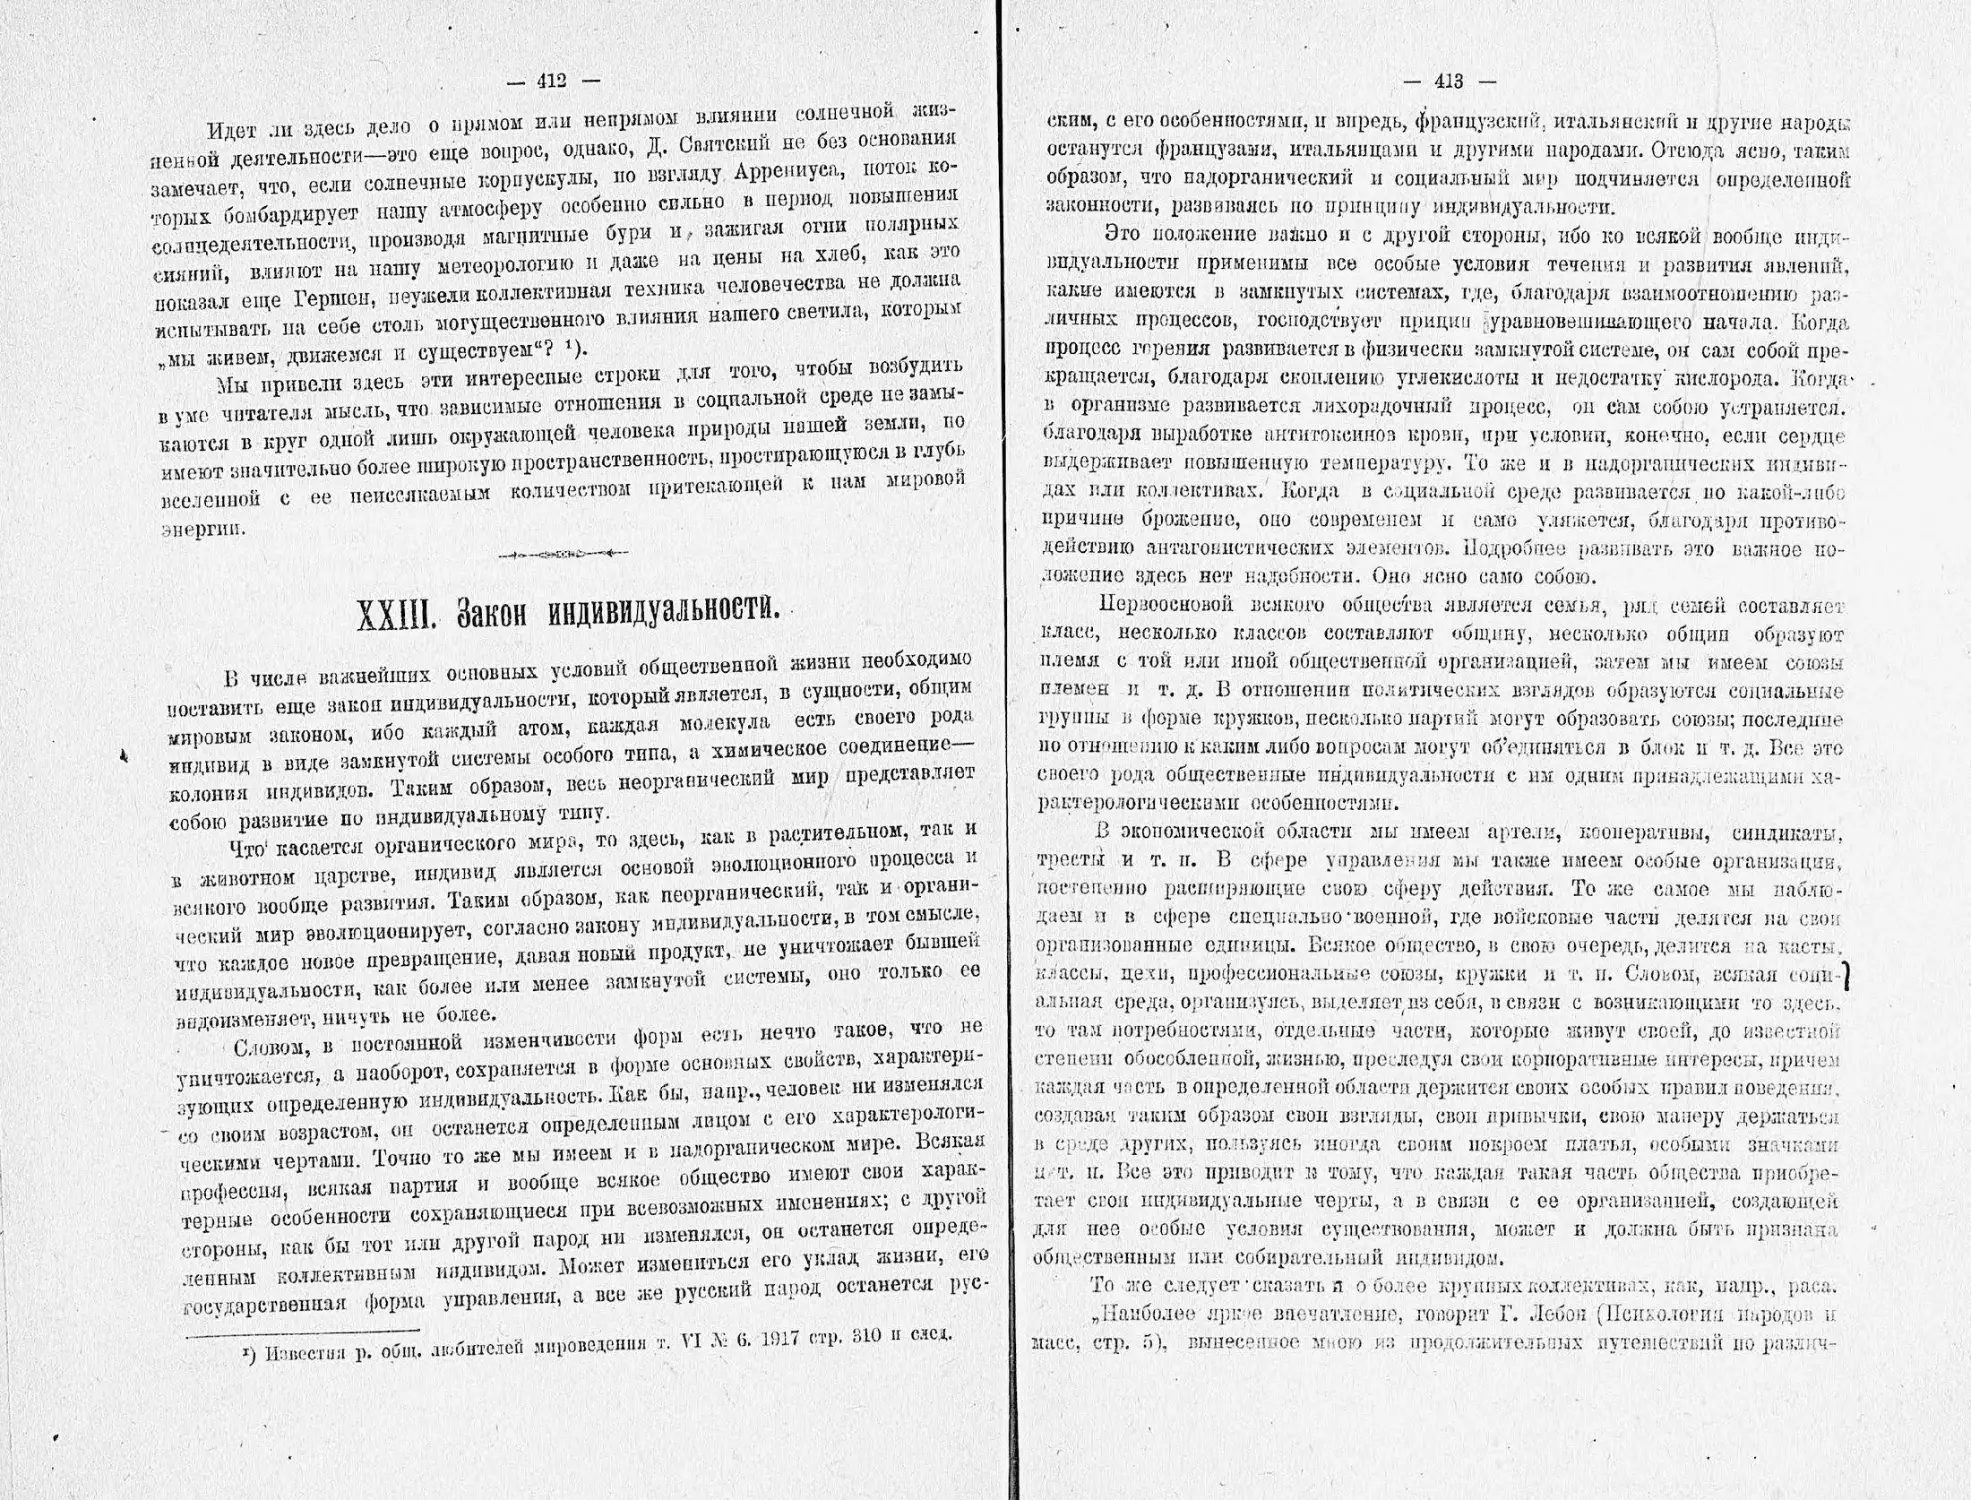 Бехтерев В.М. - Коллективная рефлексология, 1921_Страница_208